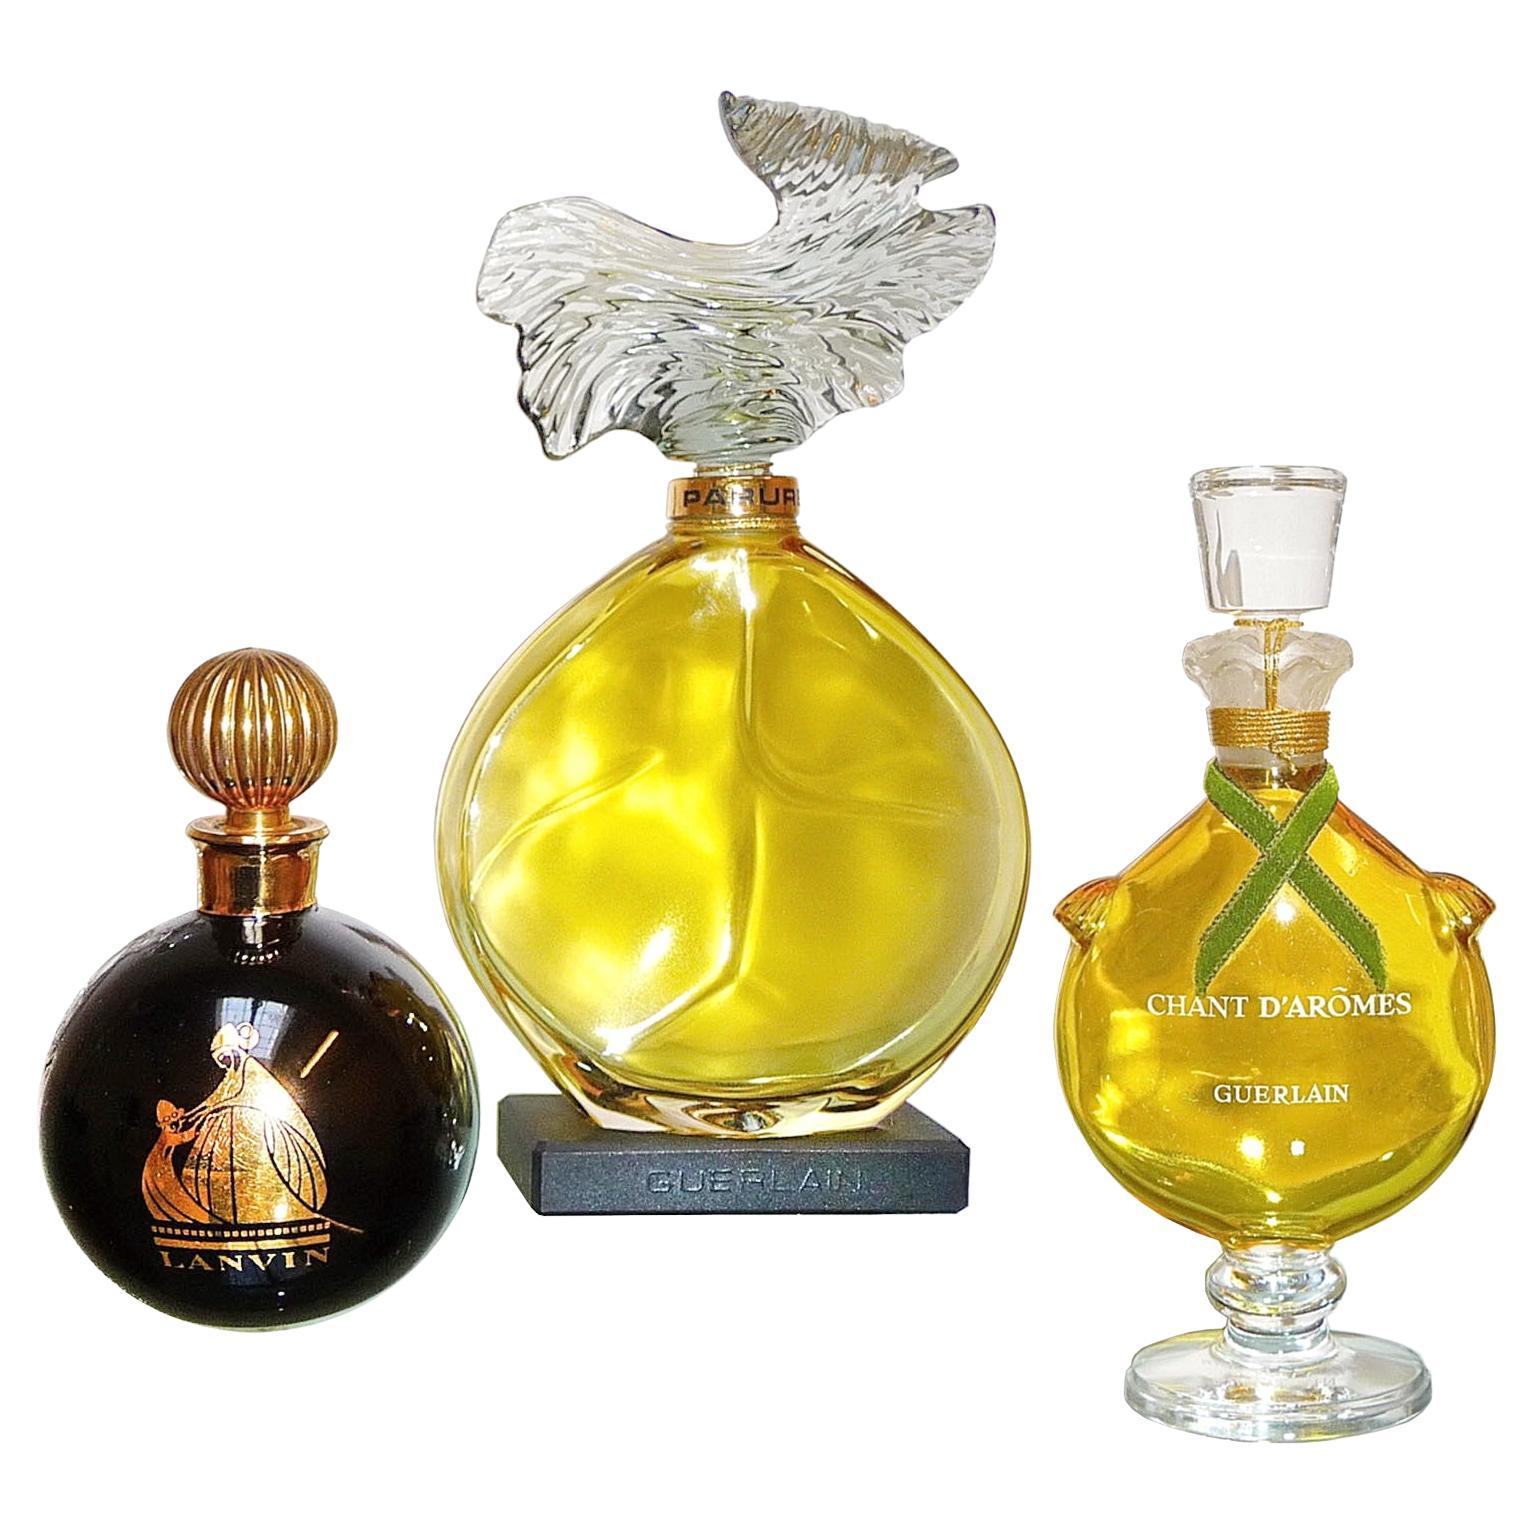 Bouteilles de parfum factice Guerlain Lanvin Store Display